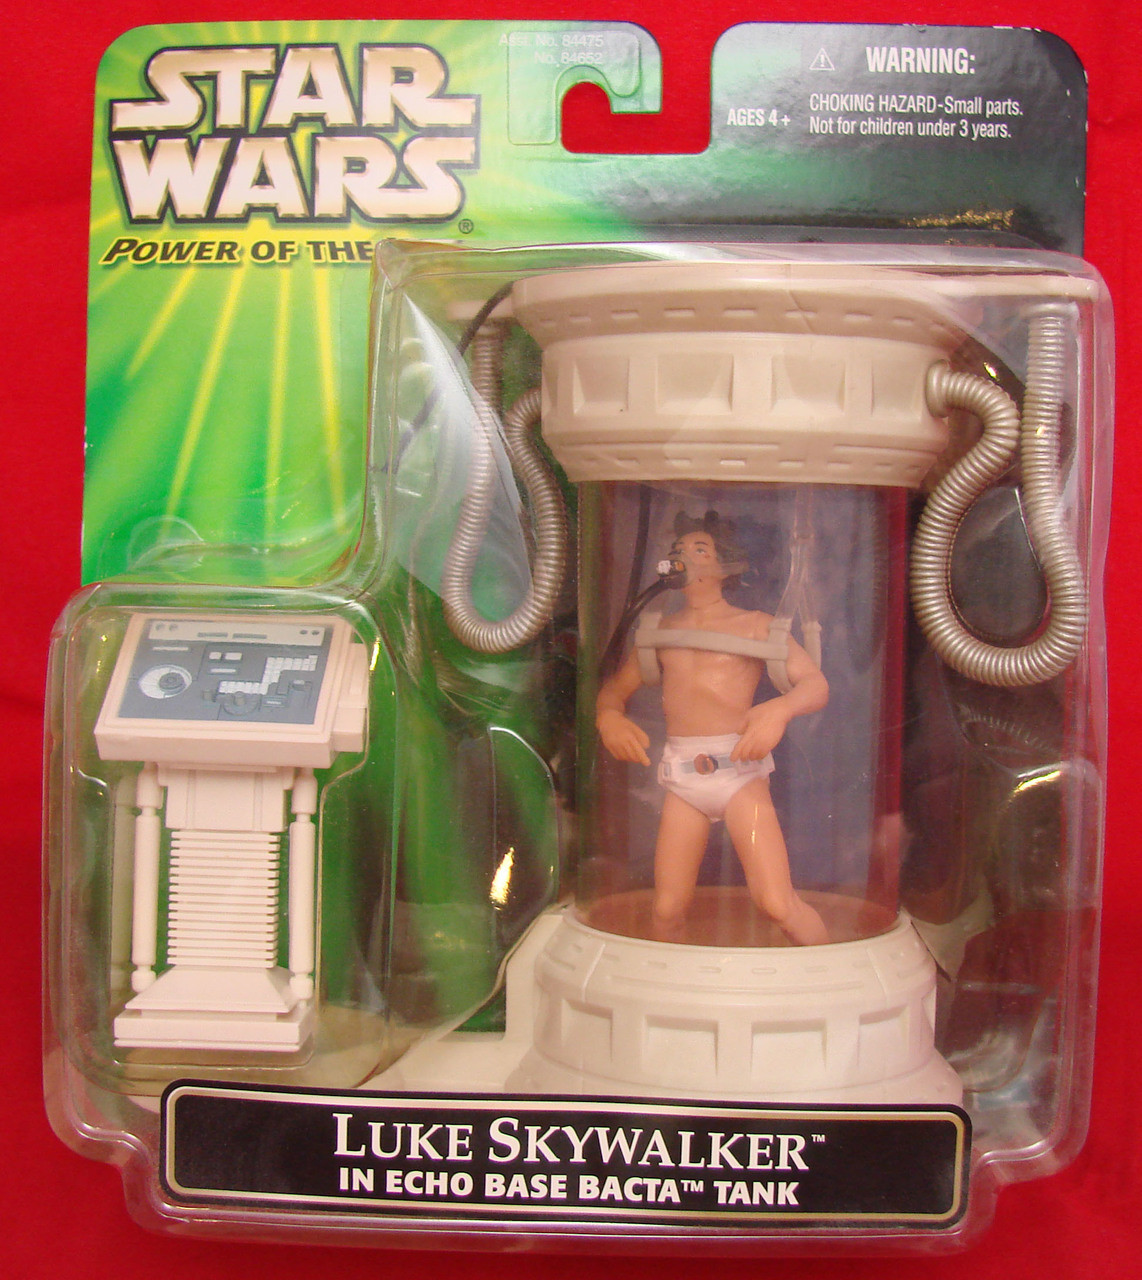 Star Wars Power of the Jedi POTJ Luke Skywalker in Echo Base Bacta Tank